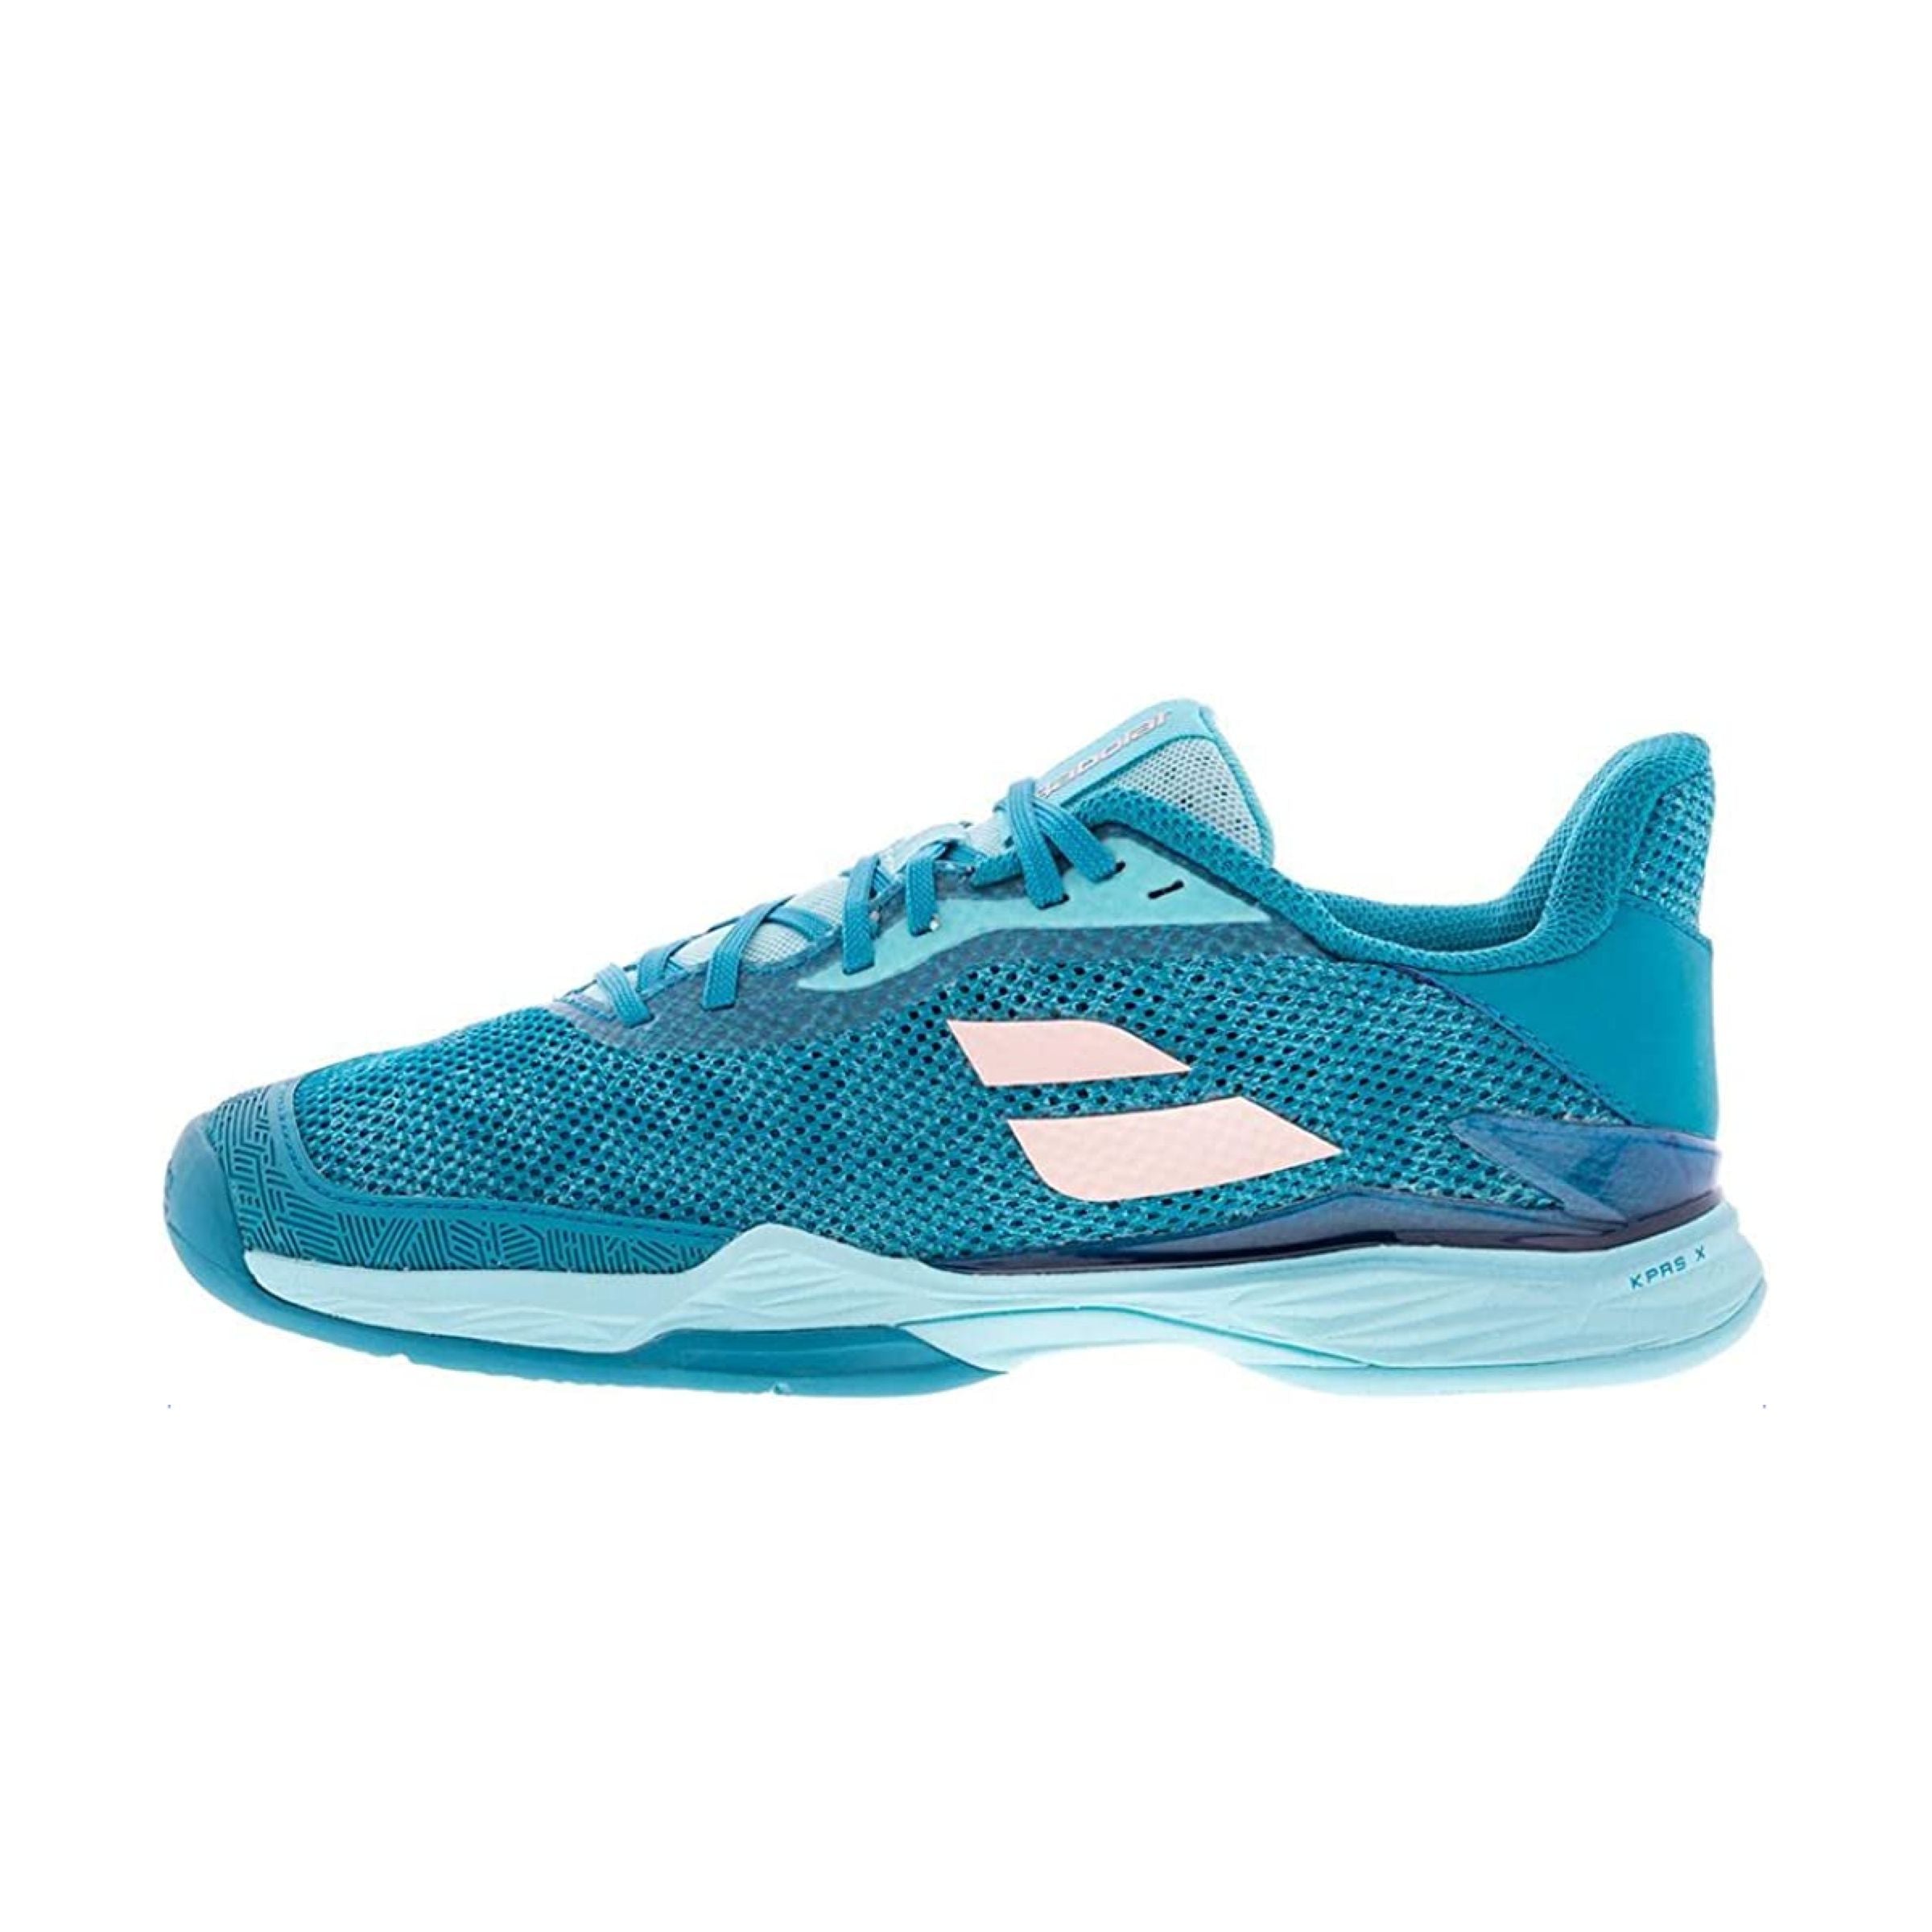 Women's Jet Tere All Court Tennis Shoes Harbor Blue 